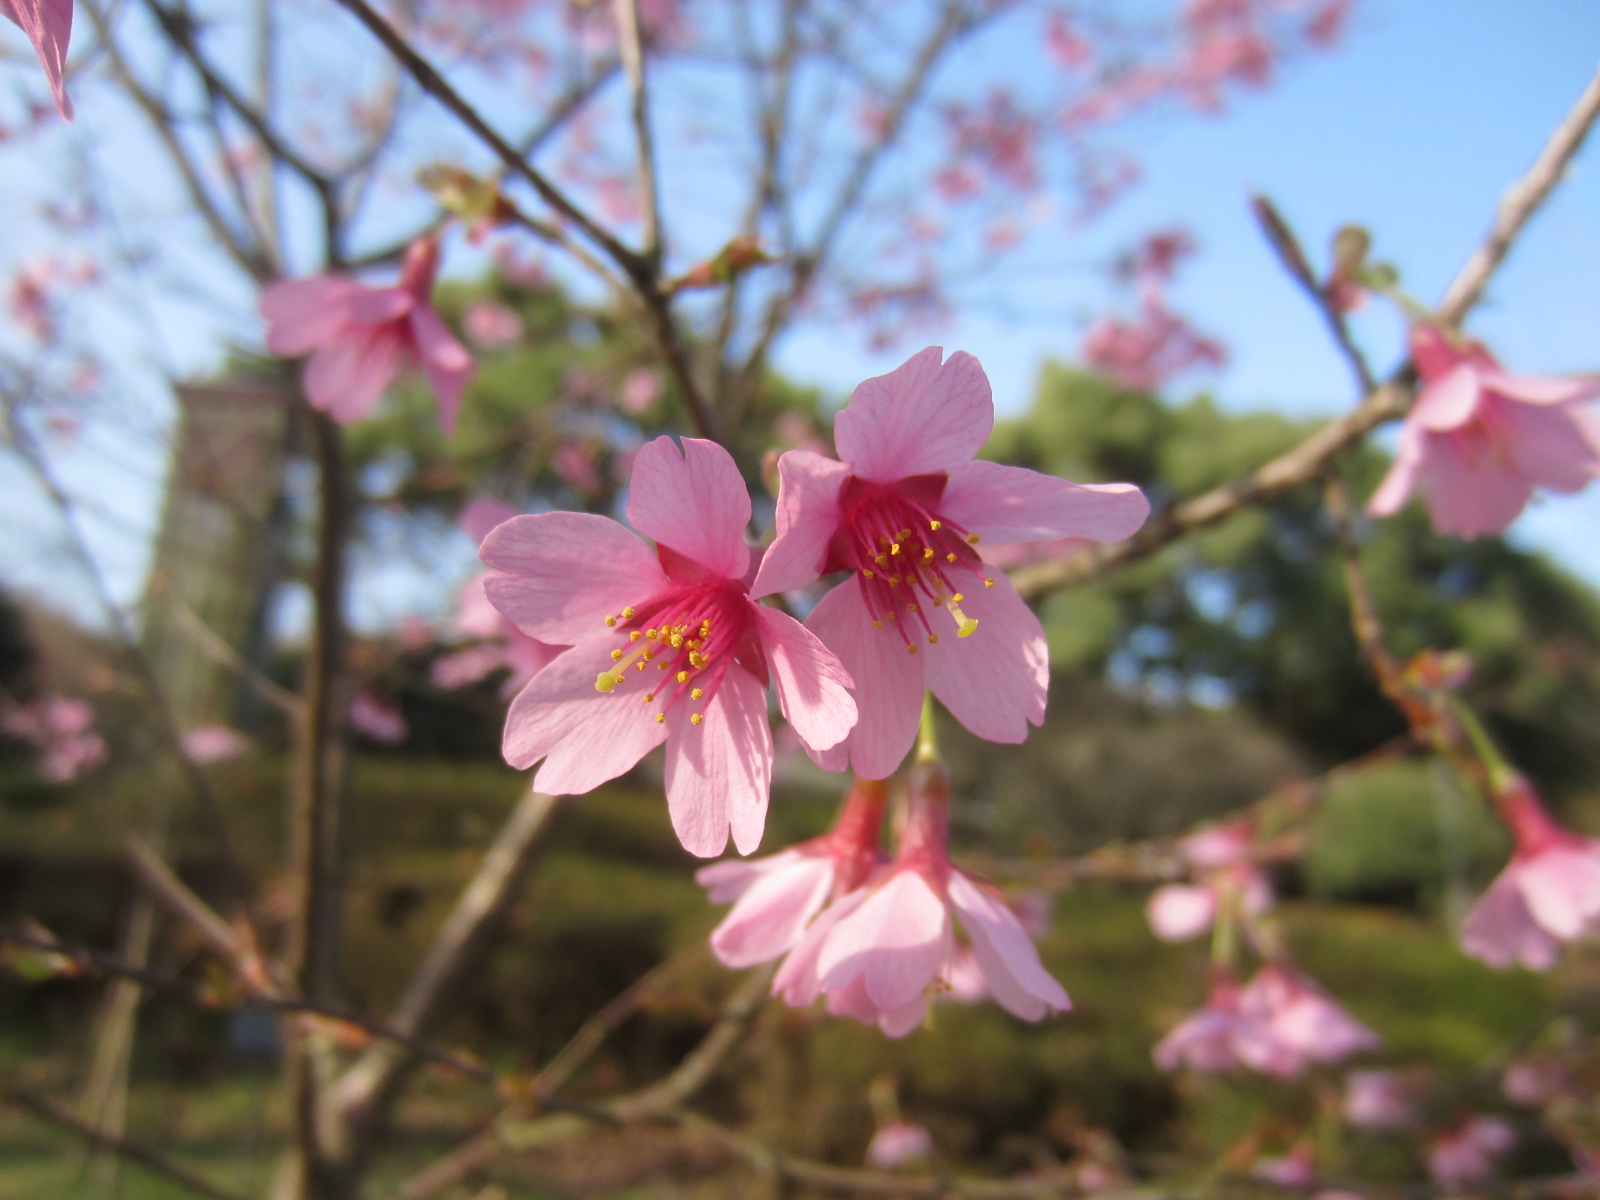 福岡市植物園ブログ 緋色の系統 早咲きの桜たち 18 3 21